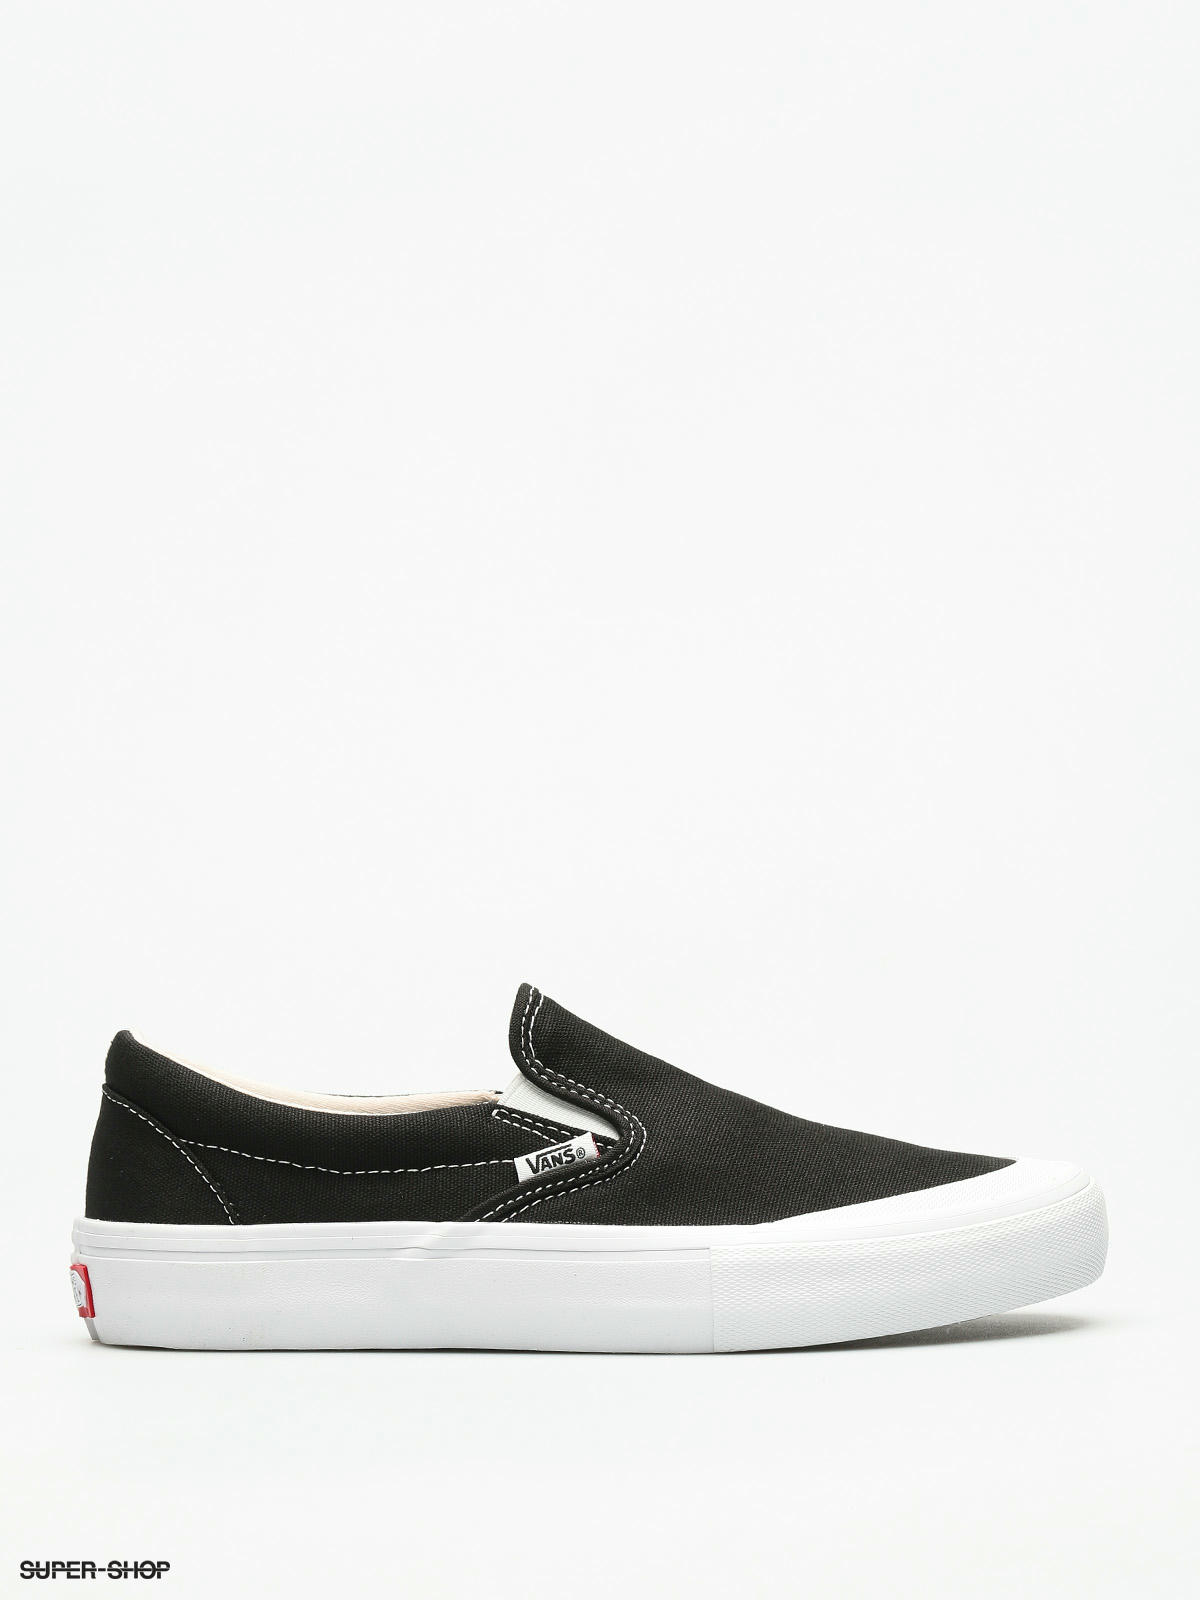 Shoes Slip Pro (toe cap/black/white)